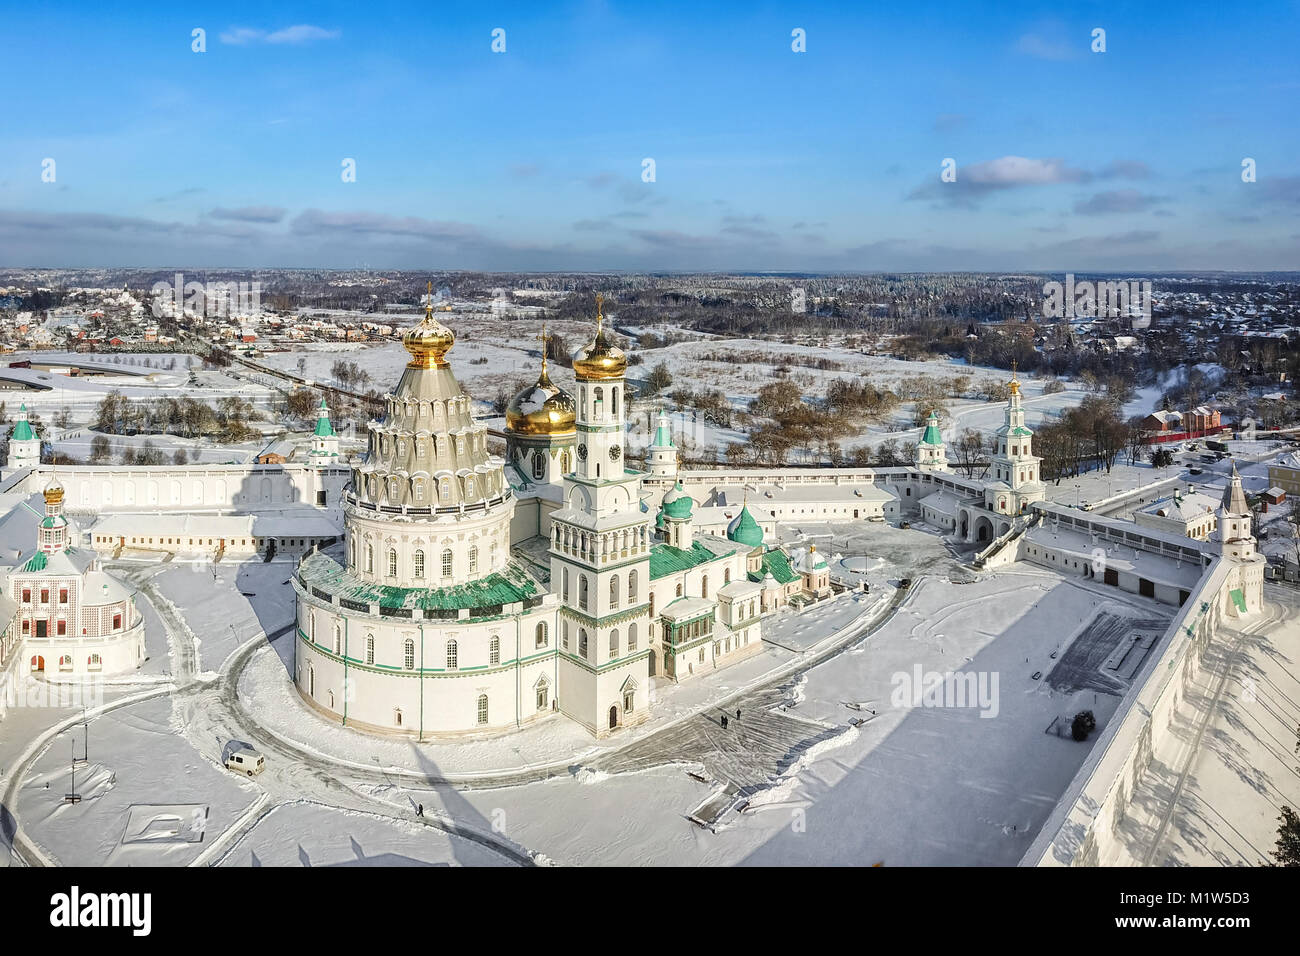 Vue aérienne de la Nouvelle Jérusalem monastère en hiver, Istra, l'oblast de Moscou, Russie Banque D'Images